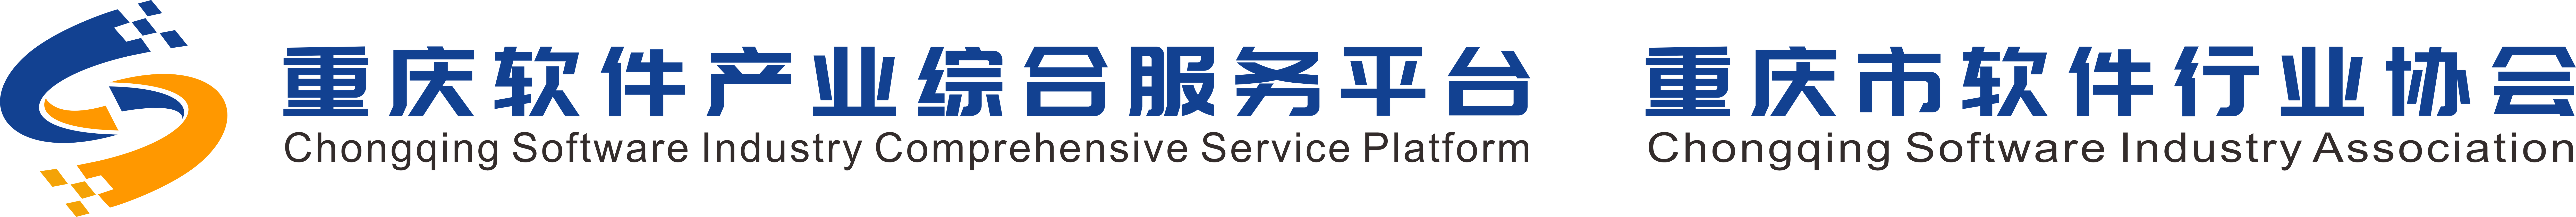 重庆软件产业综合服务平台 、永乐高ylg888888